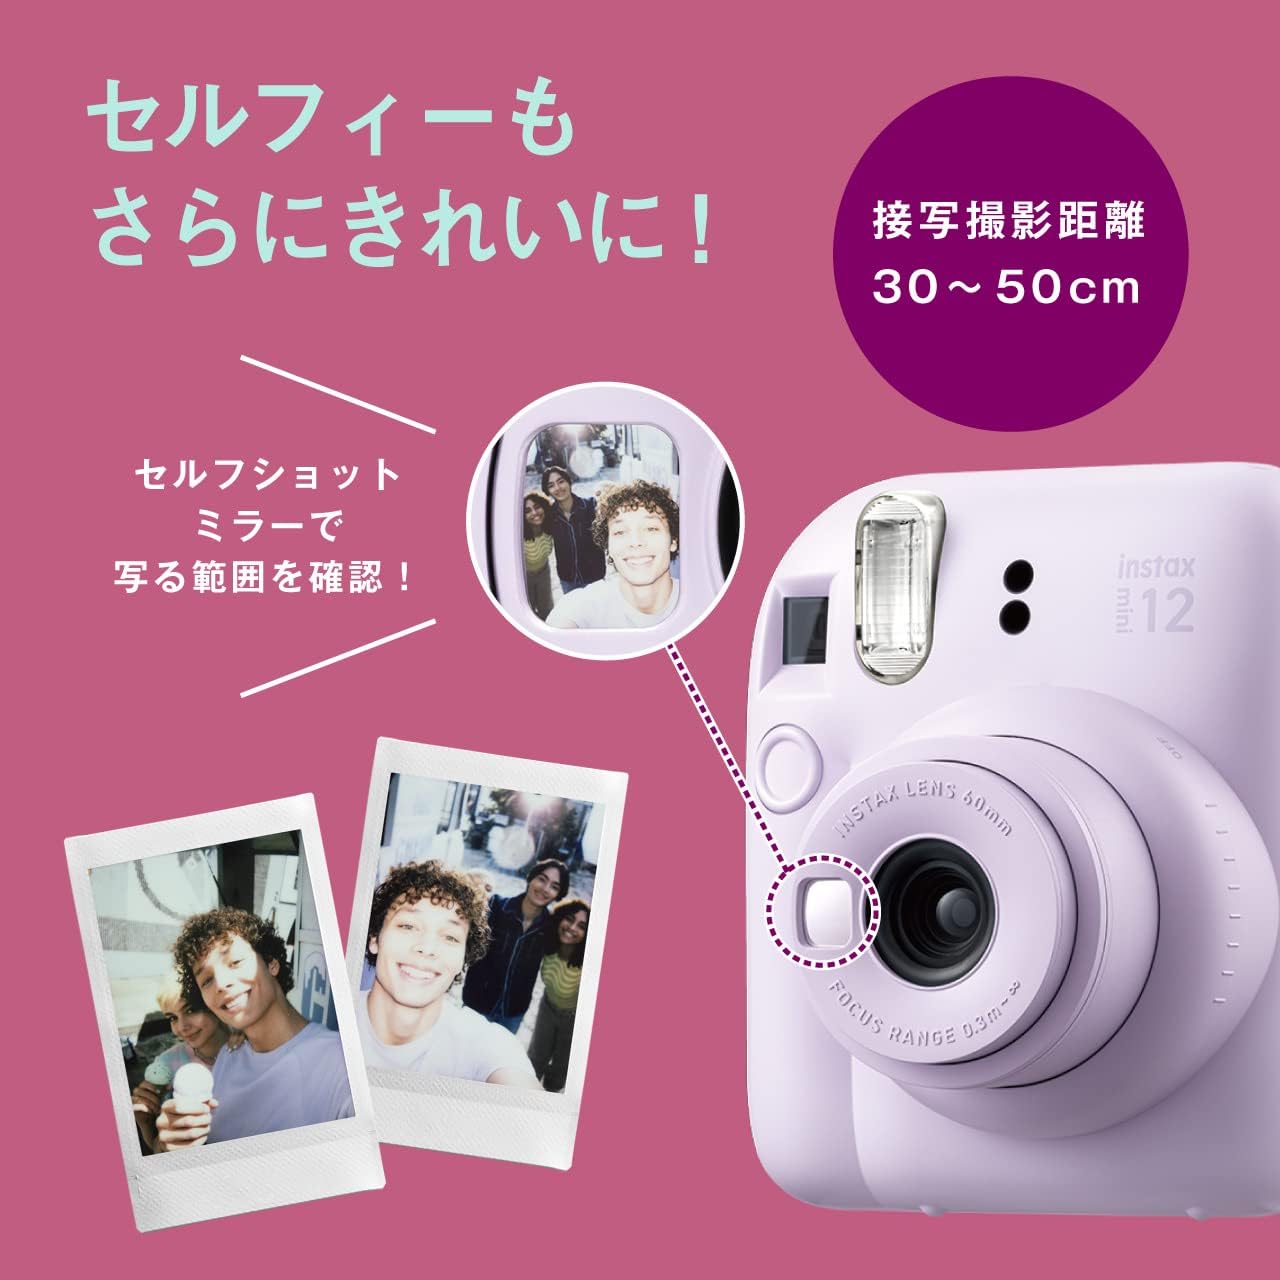 富士相機 instax mini 12 白色 [日本直銷]